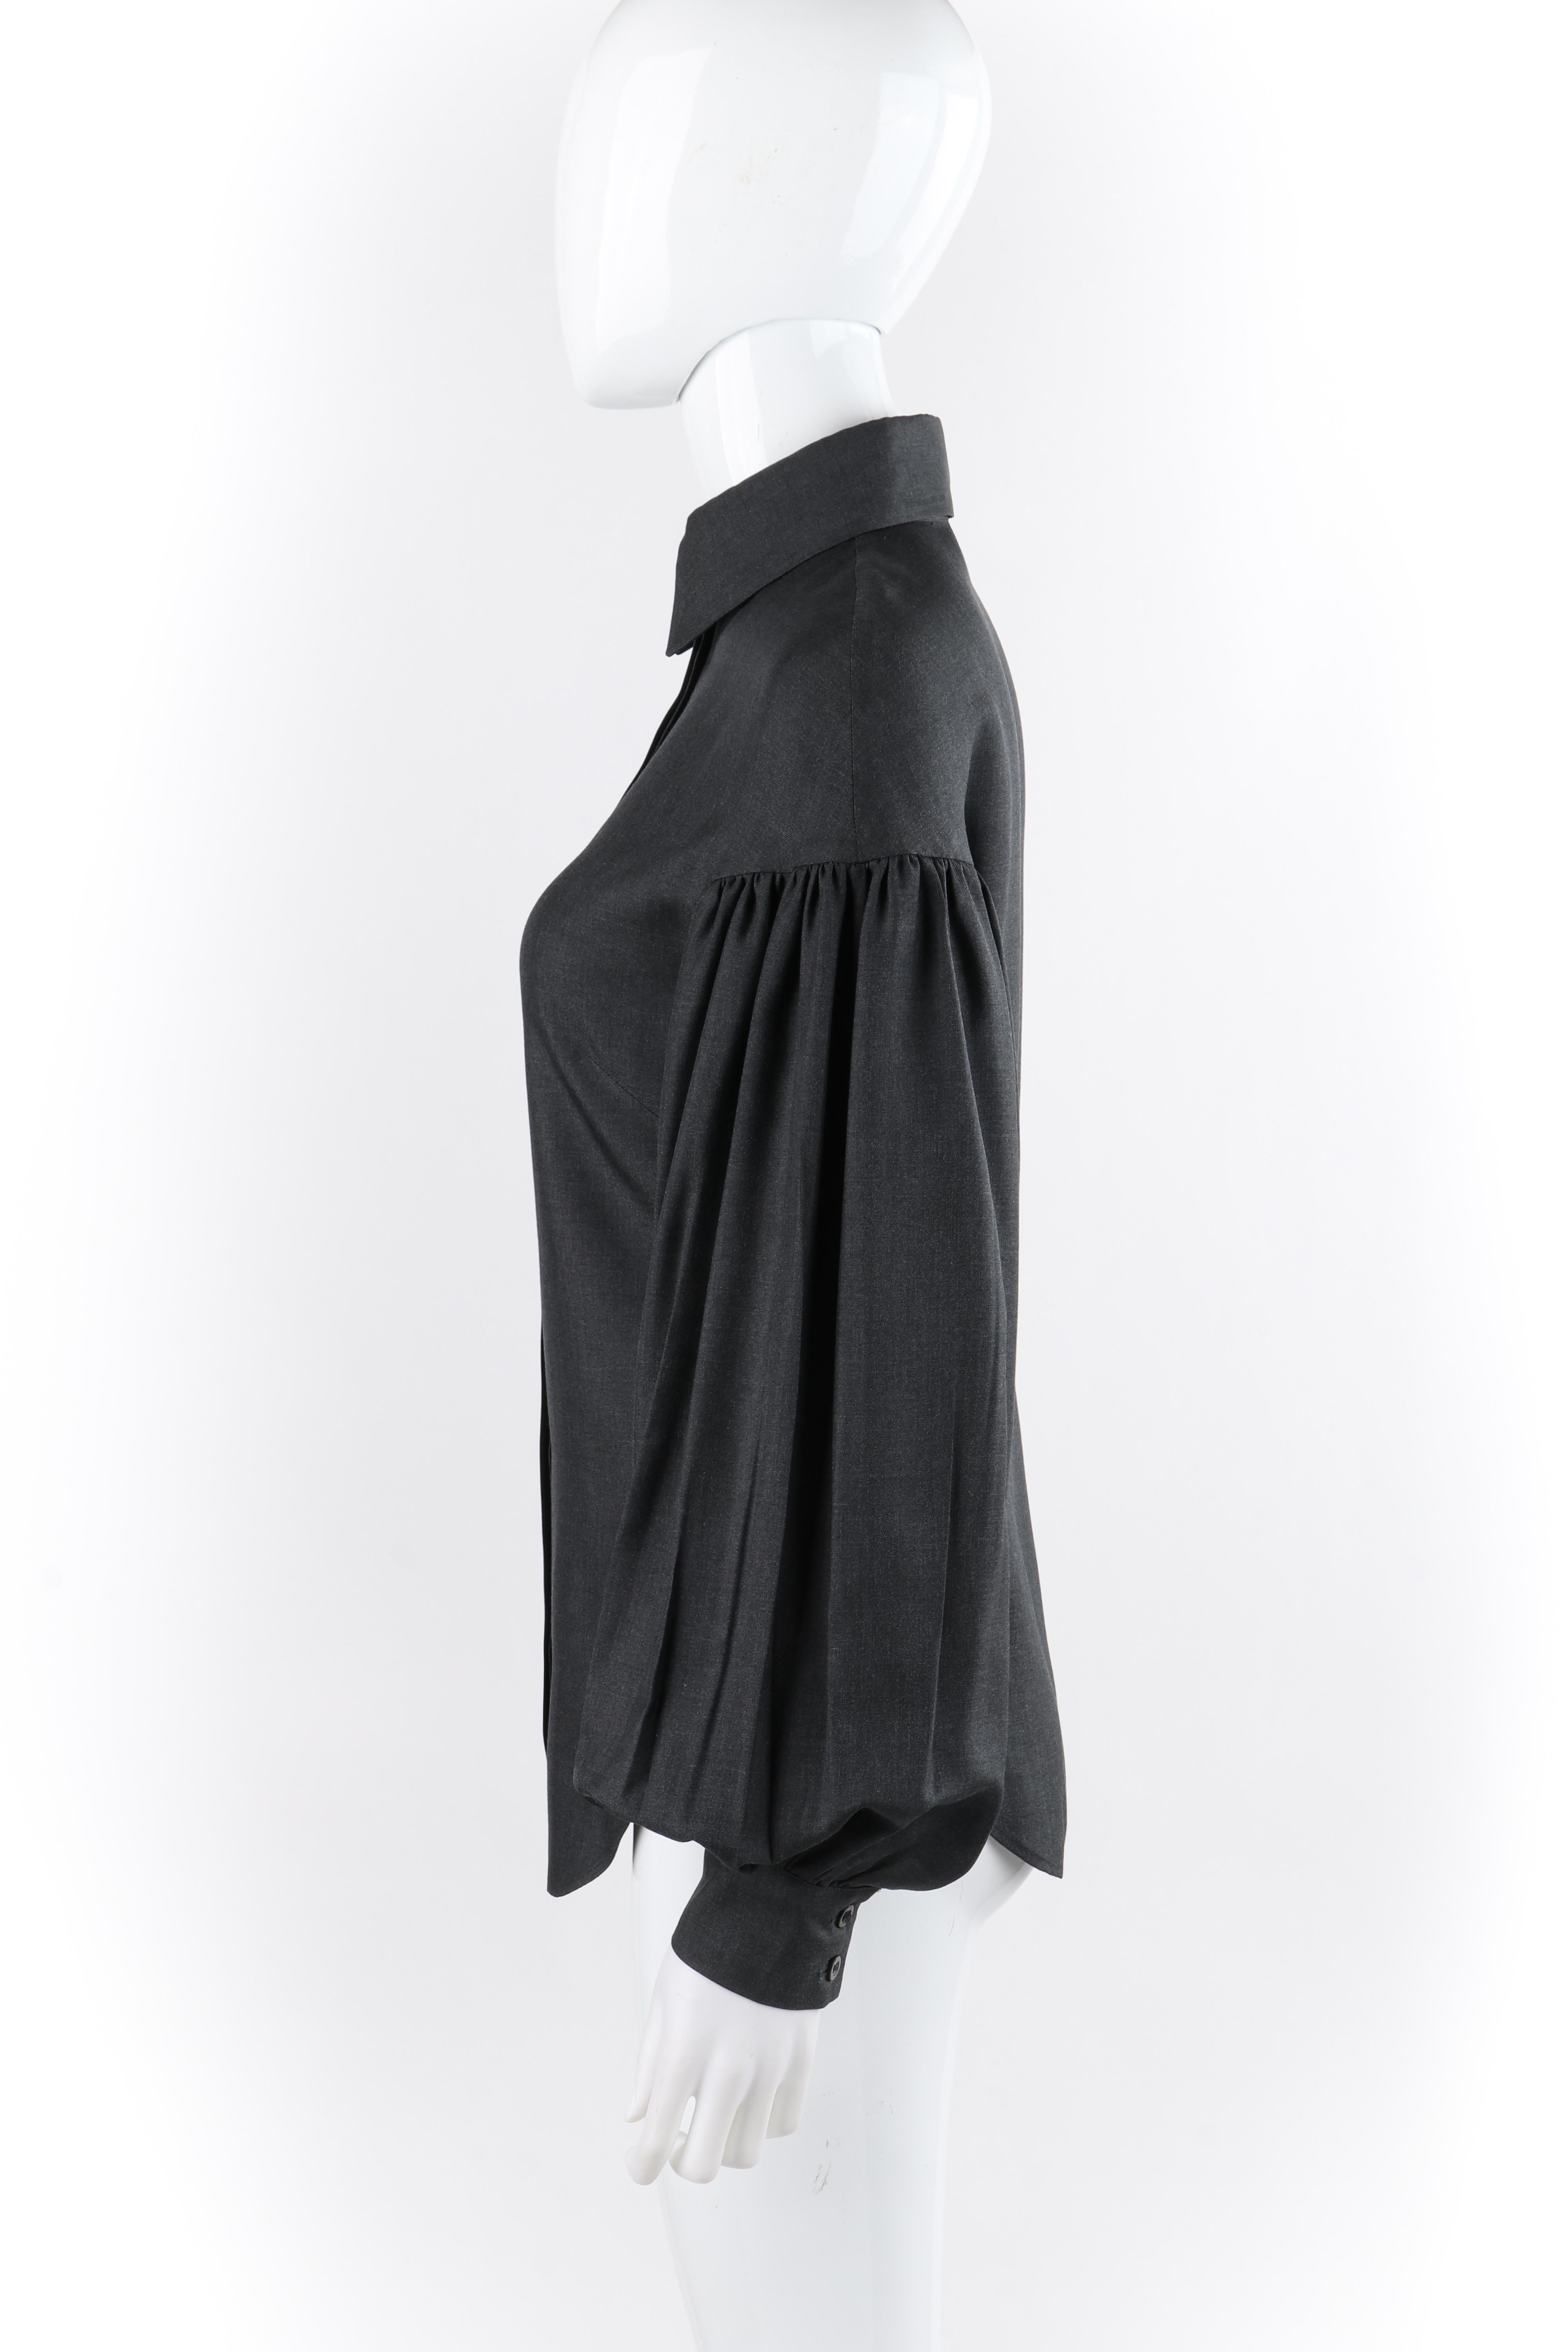 Women's  ALEXANDER McQUEEN A/W 1999 “The Overlook” Dark Gray Pleated Bishop Sleeve Top For Sale